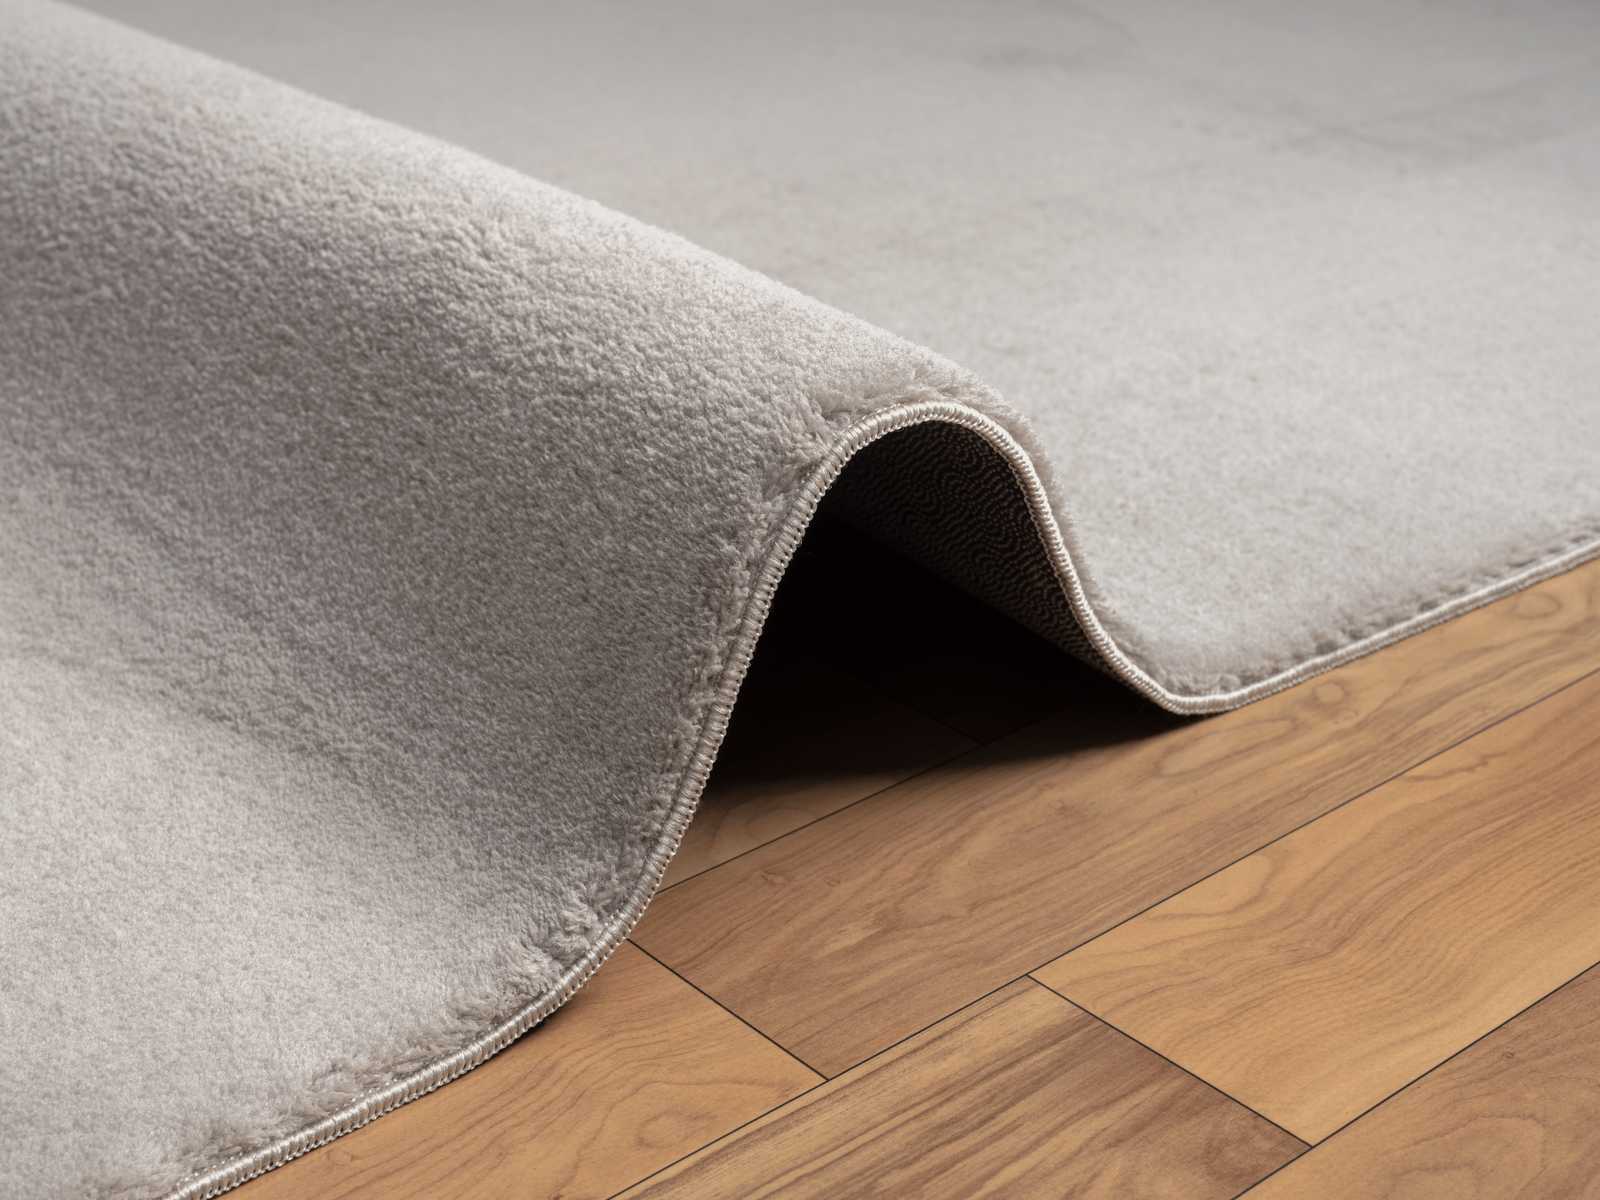             Modieus hoogpolig tapijt in zand - 110 x 60 cm
        